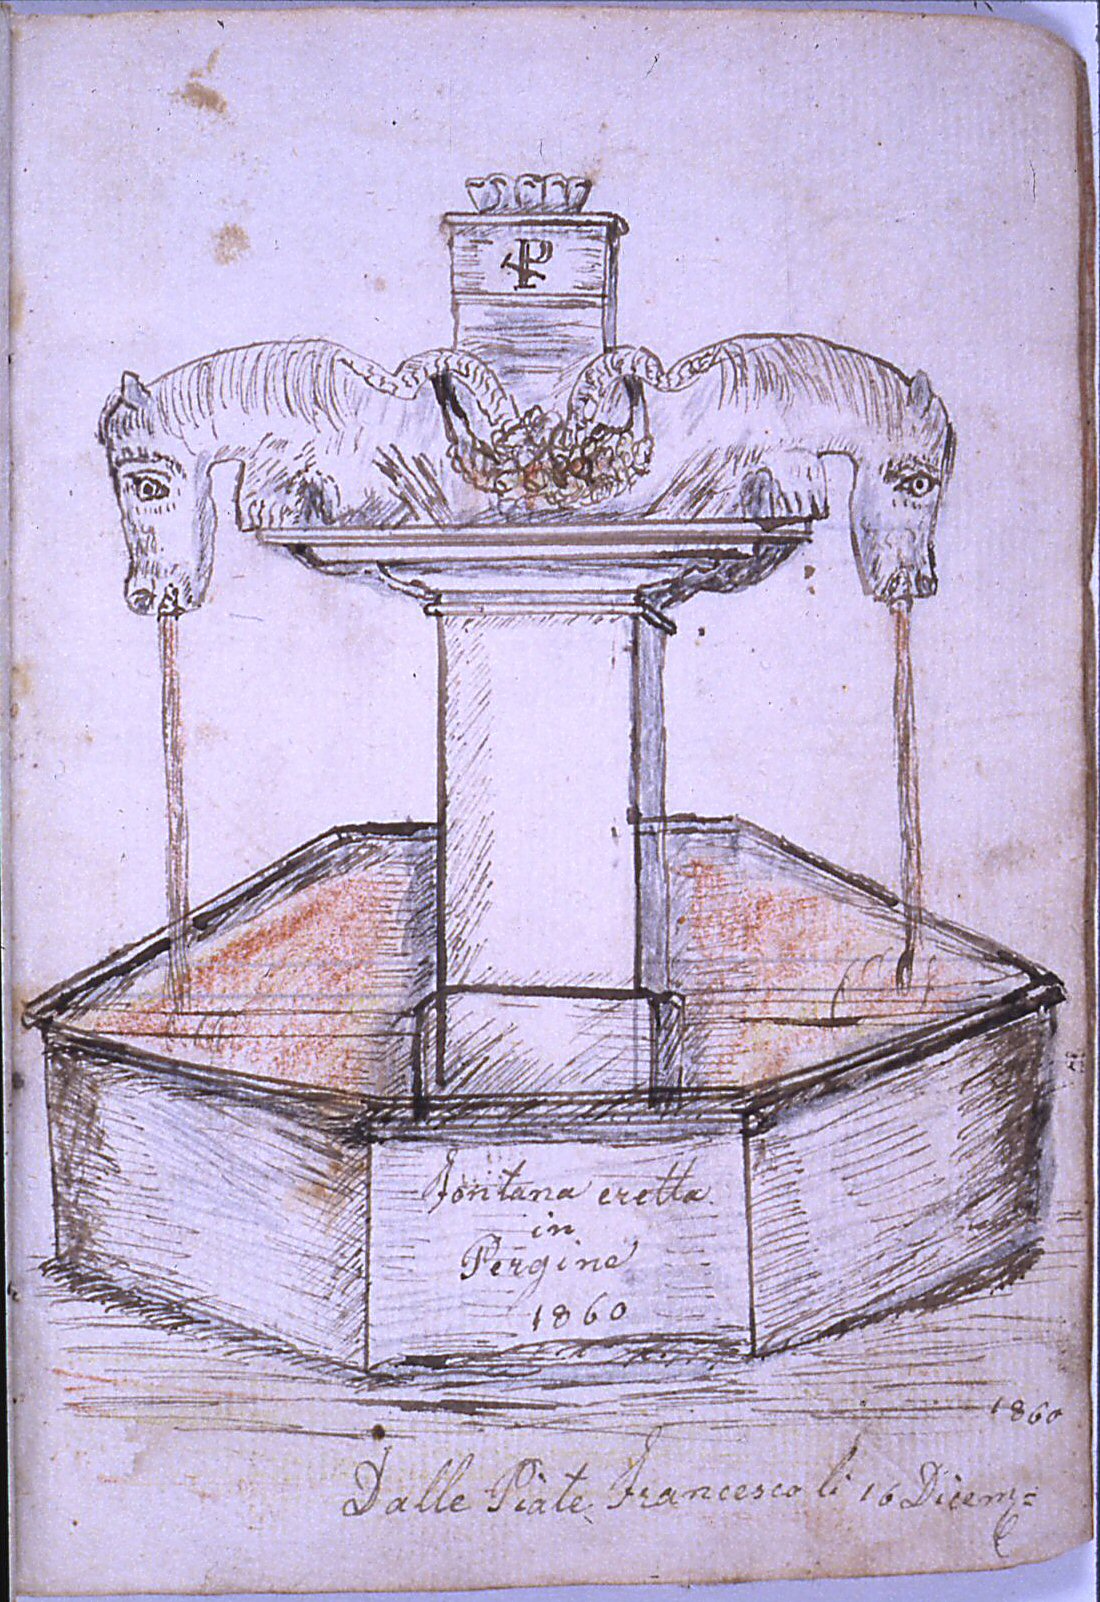 la fontana di pergine 1860